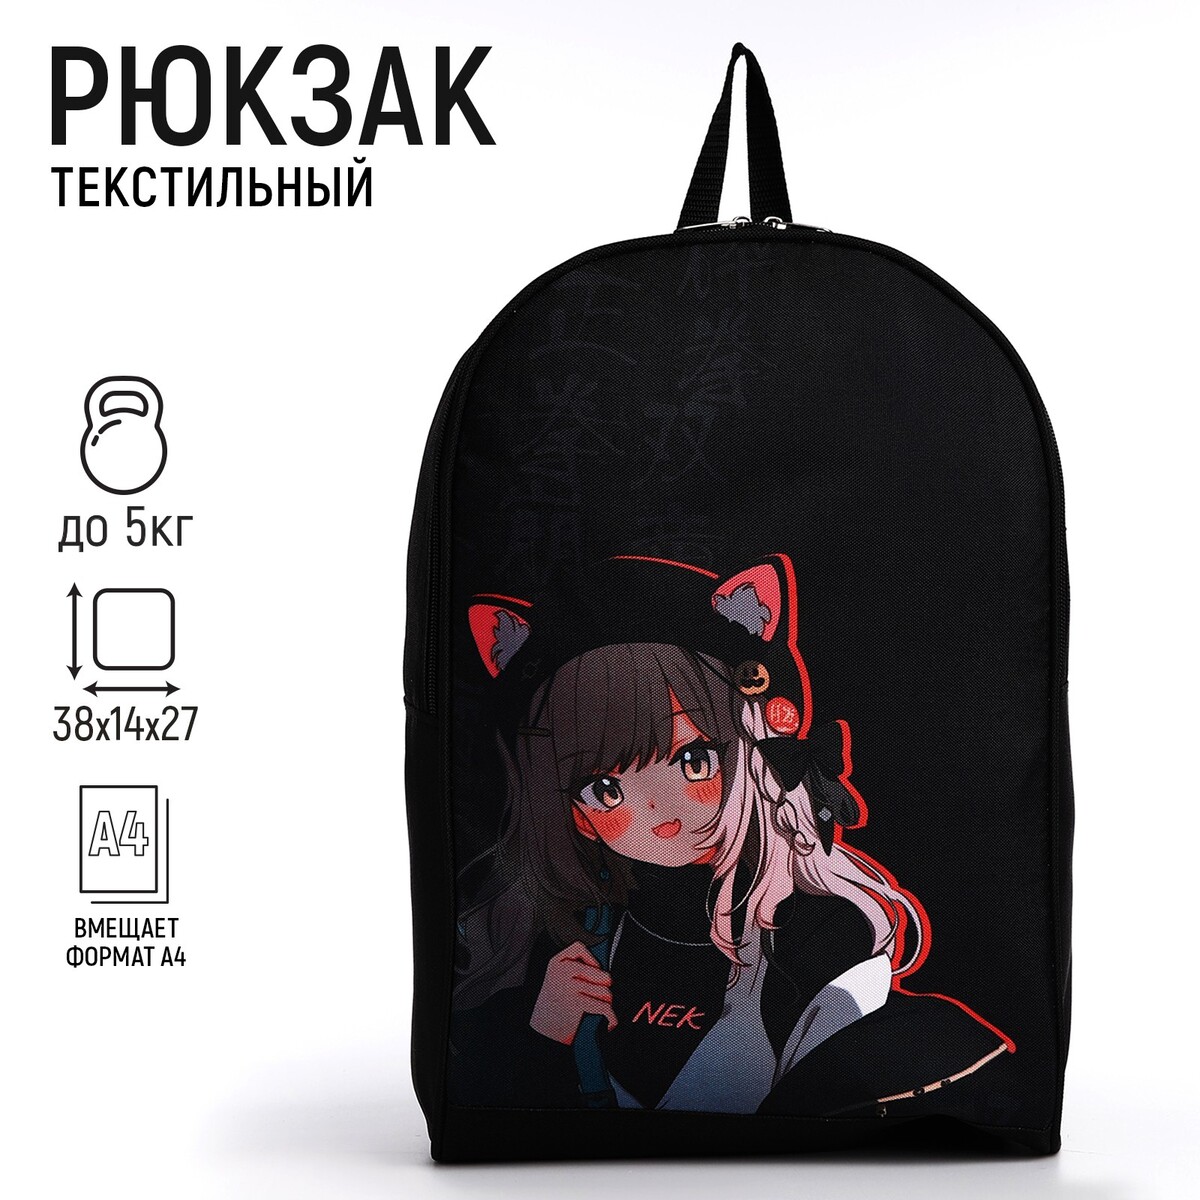 Рюкзак текстильный аниме девочка, 38х14х27 см, цвет черный NAZAMOK